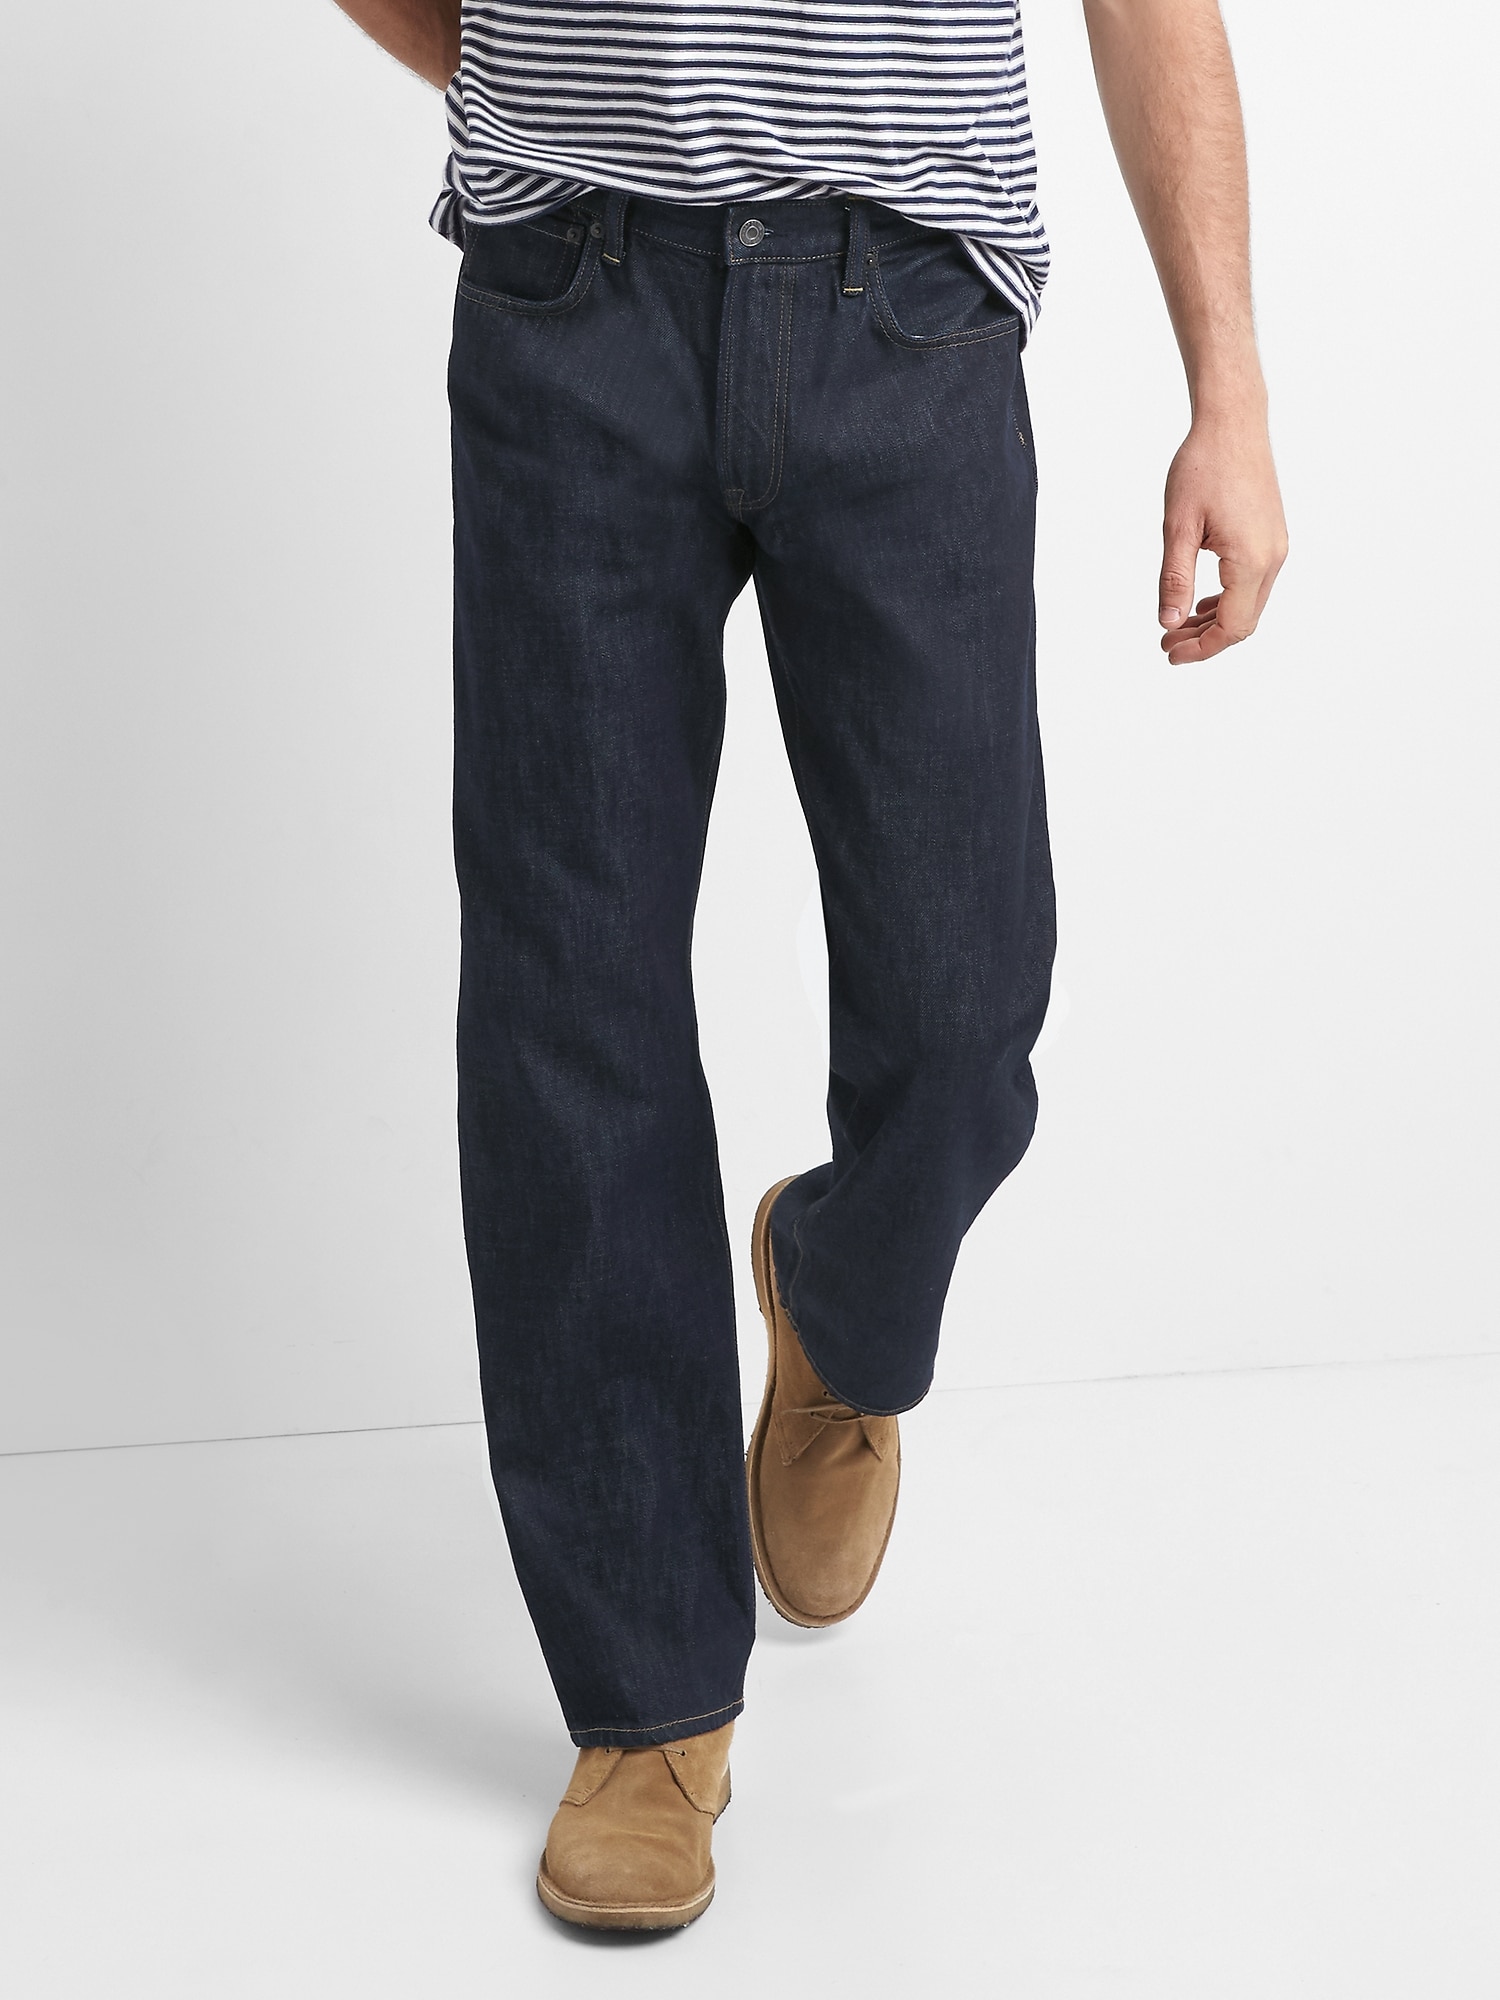 gap sale mens jeans